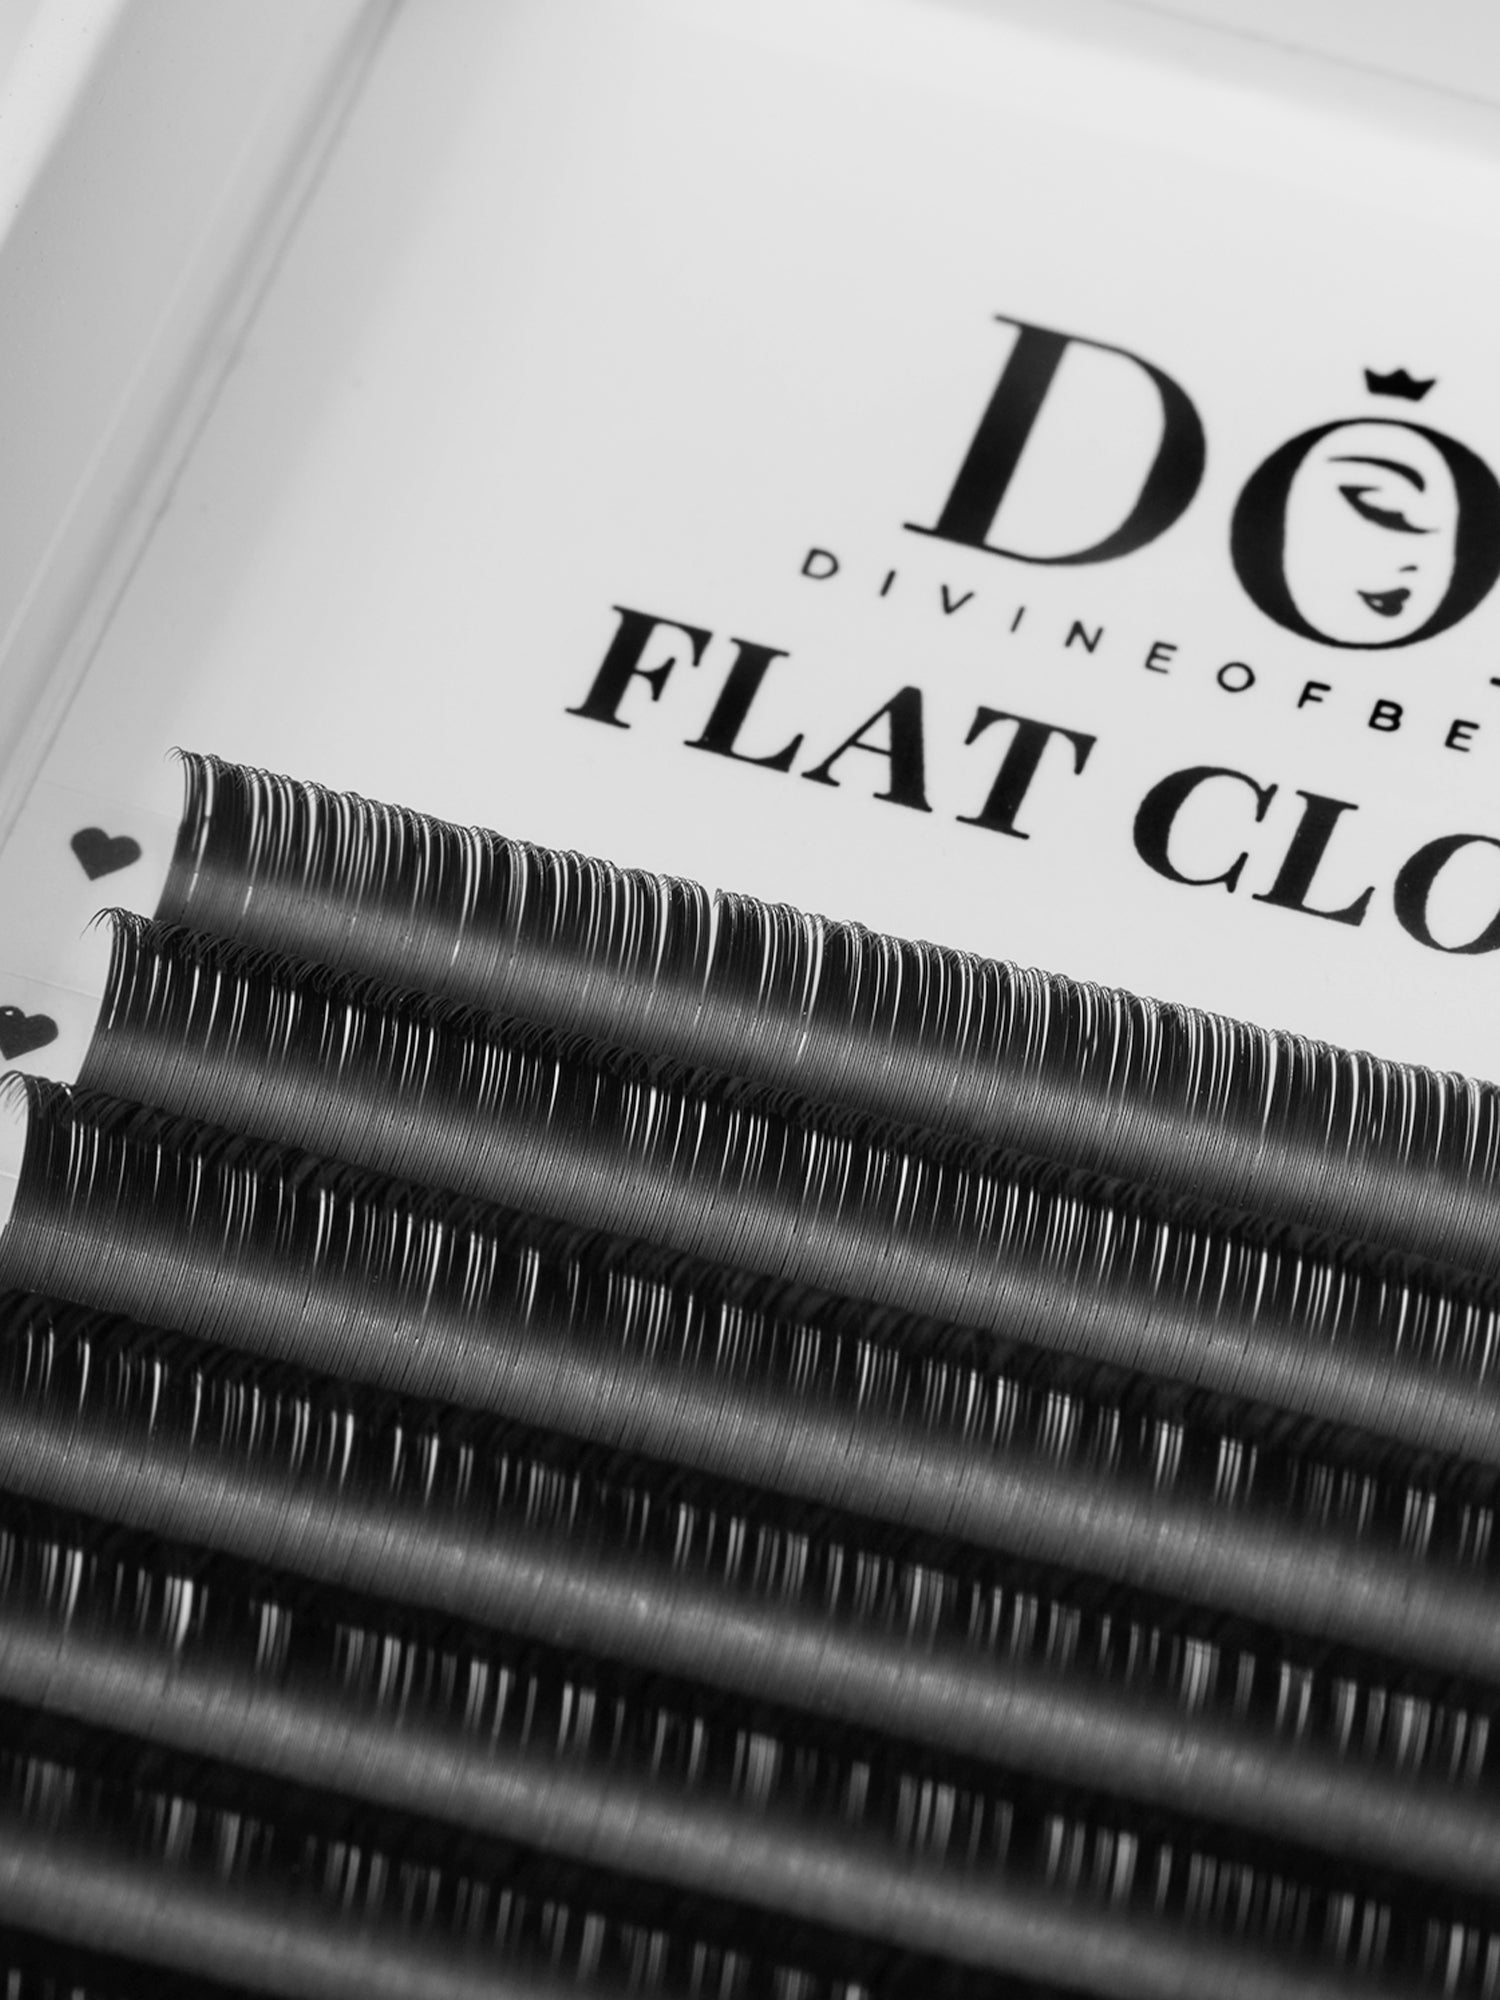 Flat Cloud 1:1 Classic